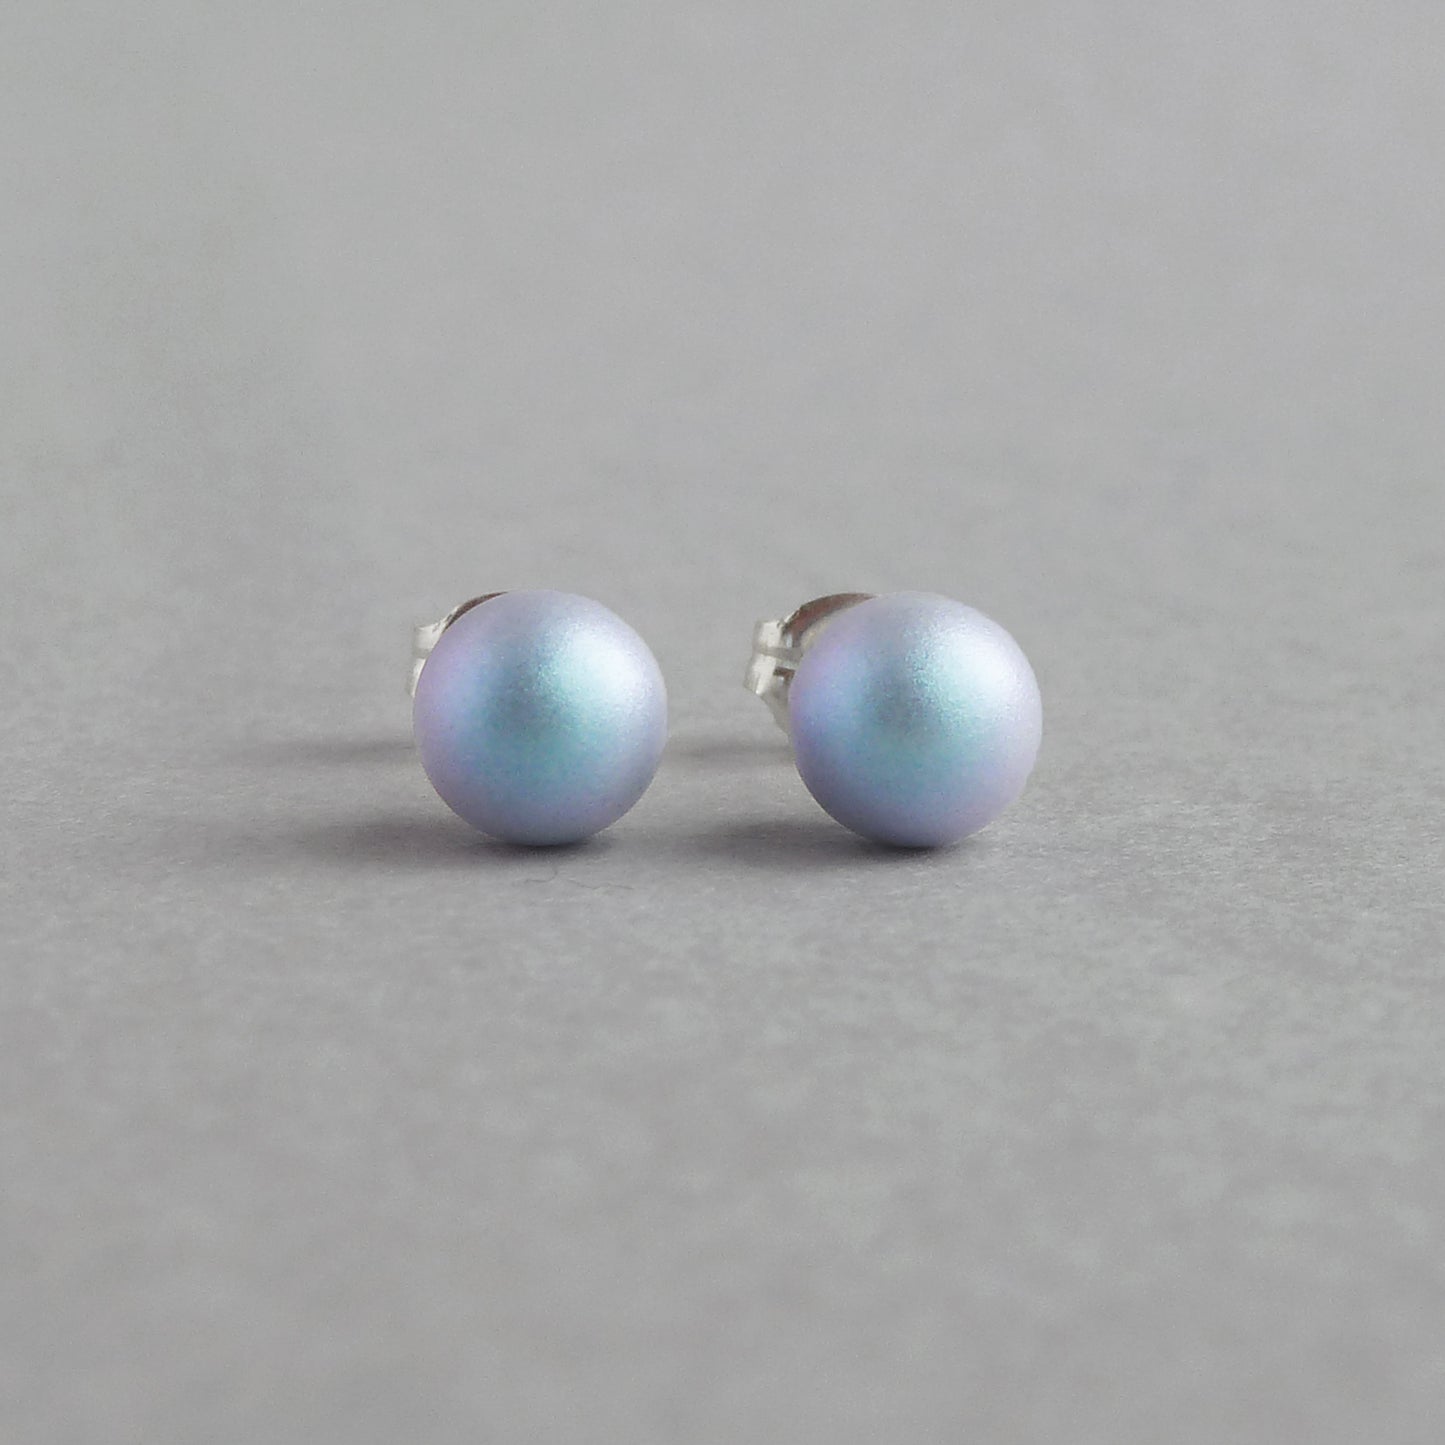 6mm light blue pearl studs